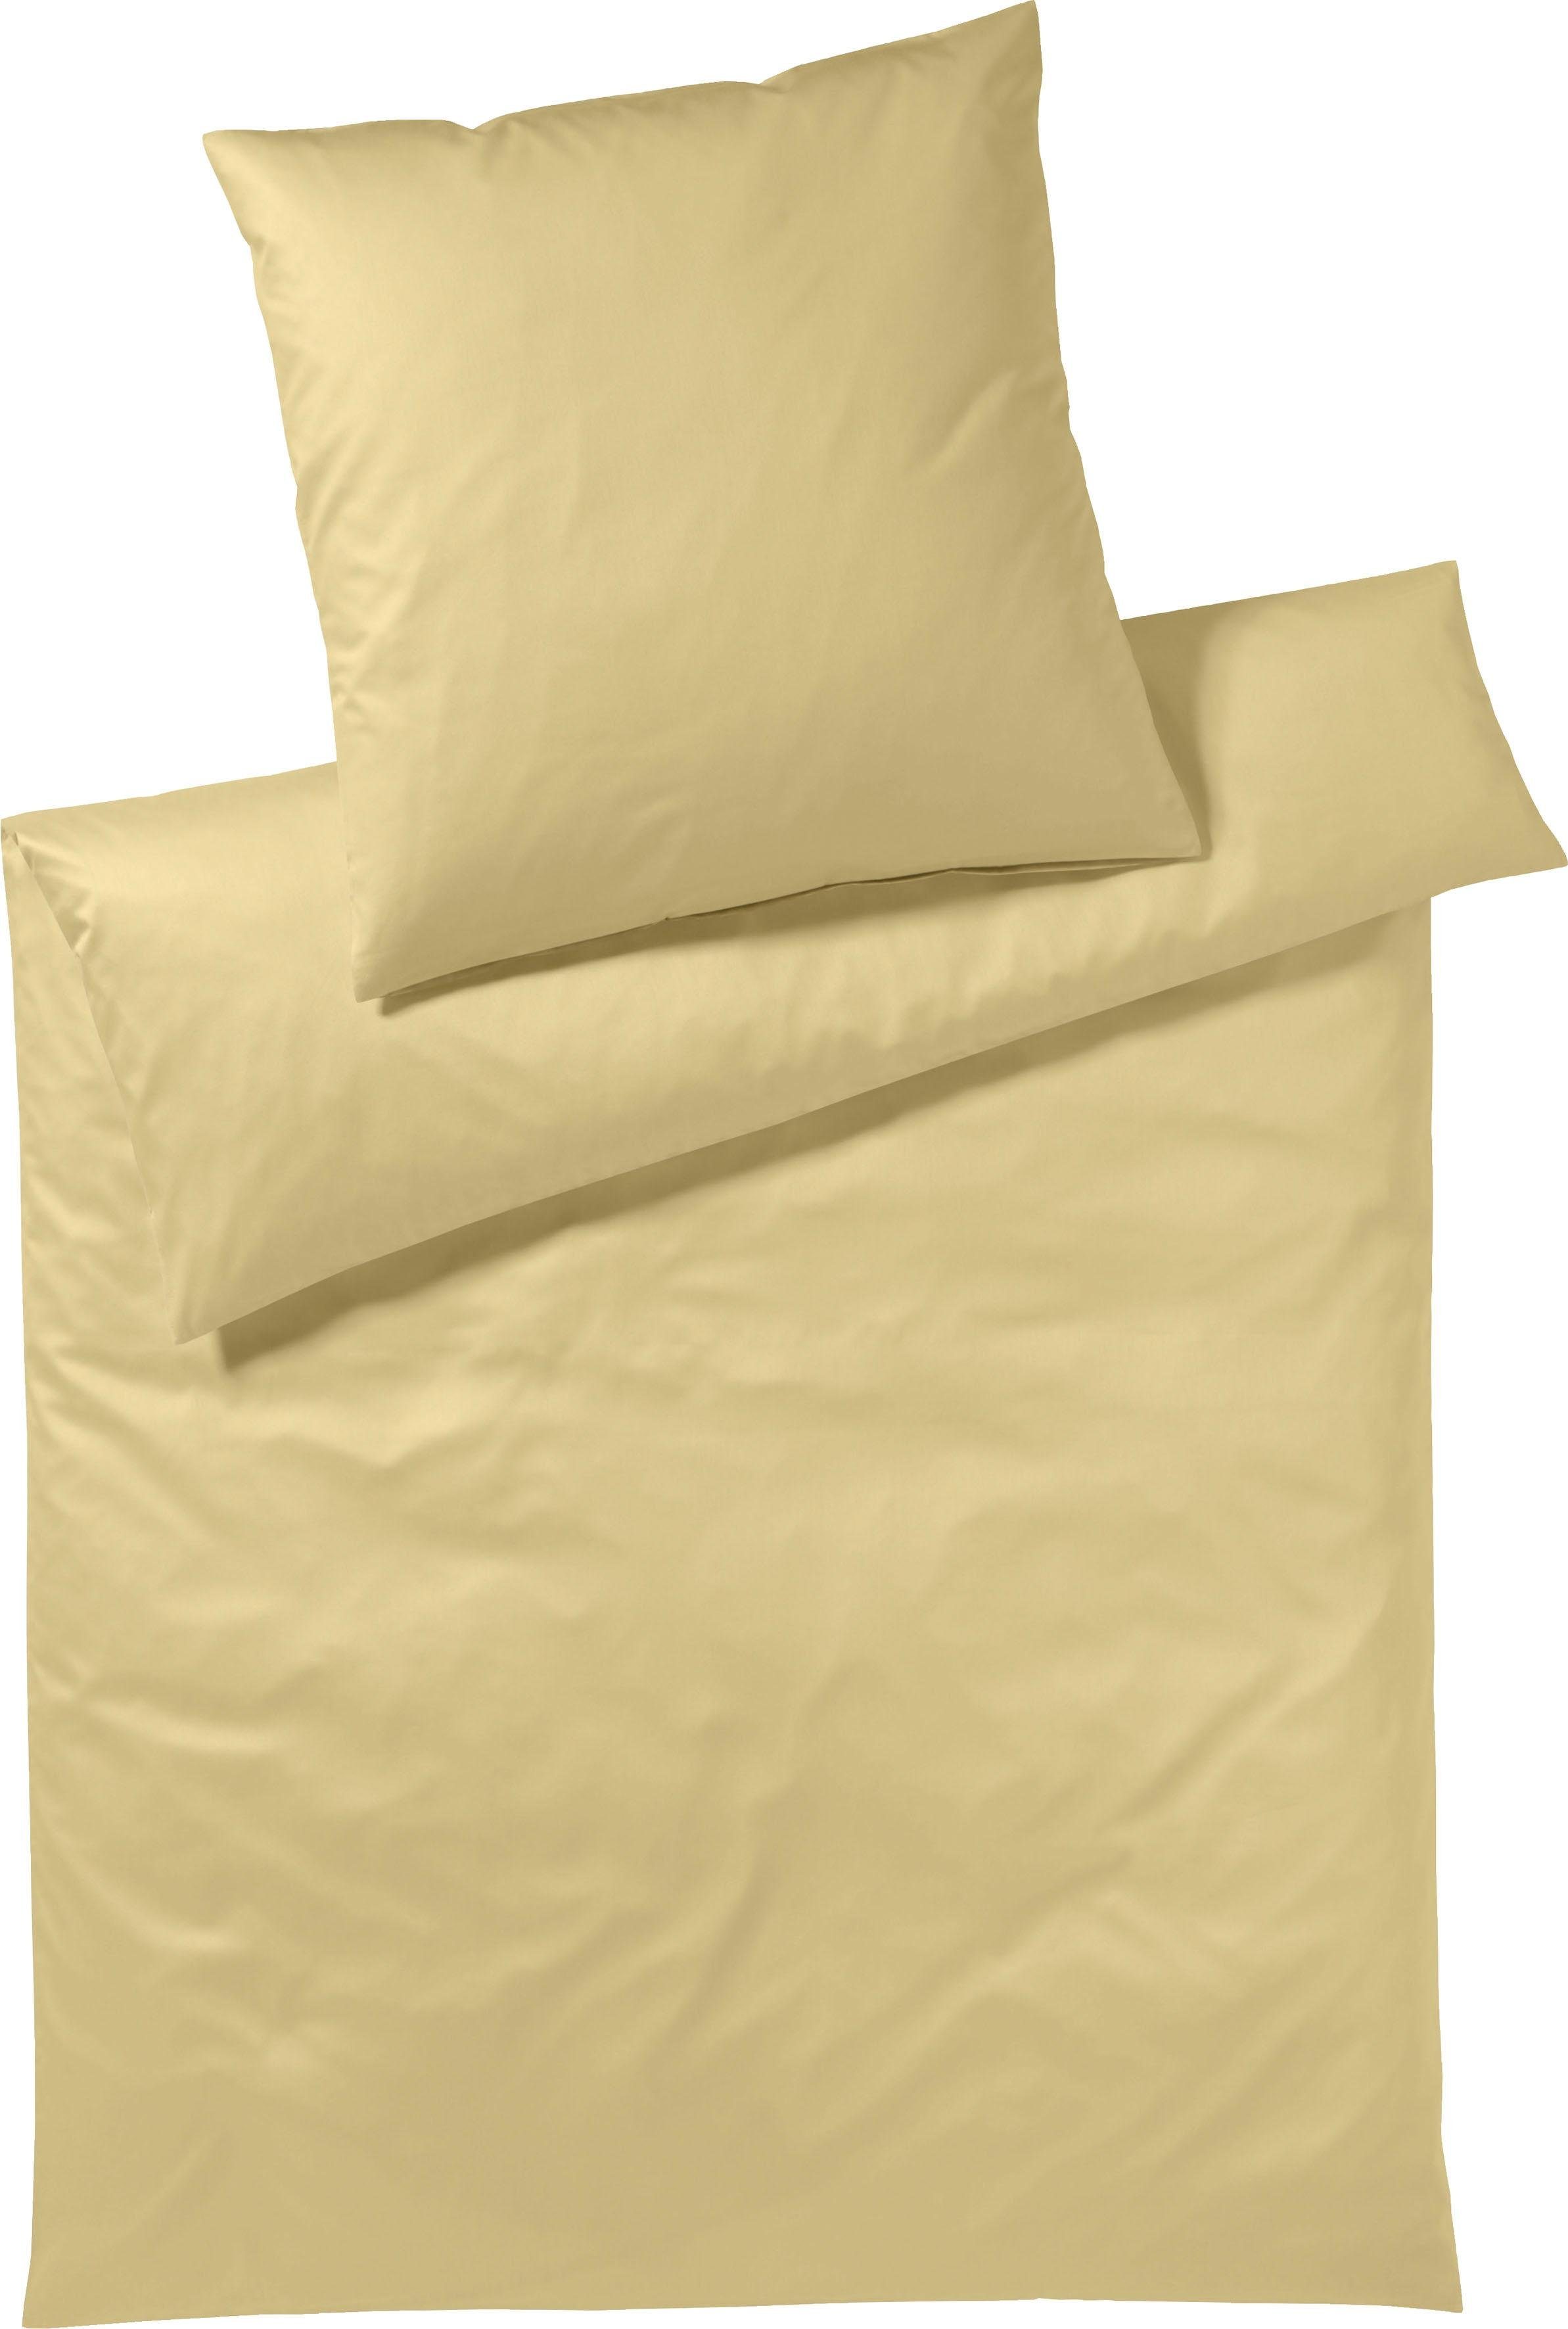 Bettwäsche Pure & Simple Uni in Gr. 135x200, 155x220 oder 200x200 cm, Yes  for Bed, Mako-Satin, 2 teilig, Bettwäsche aus Baumwolle, zeitlose Bettwäsche  mit seidigem Glanz